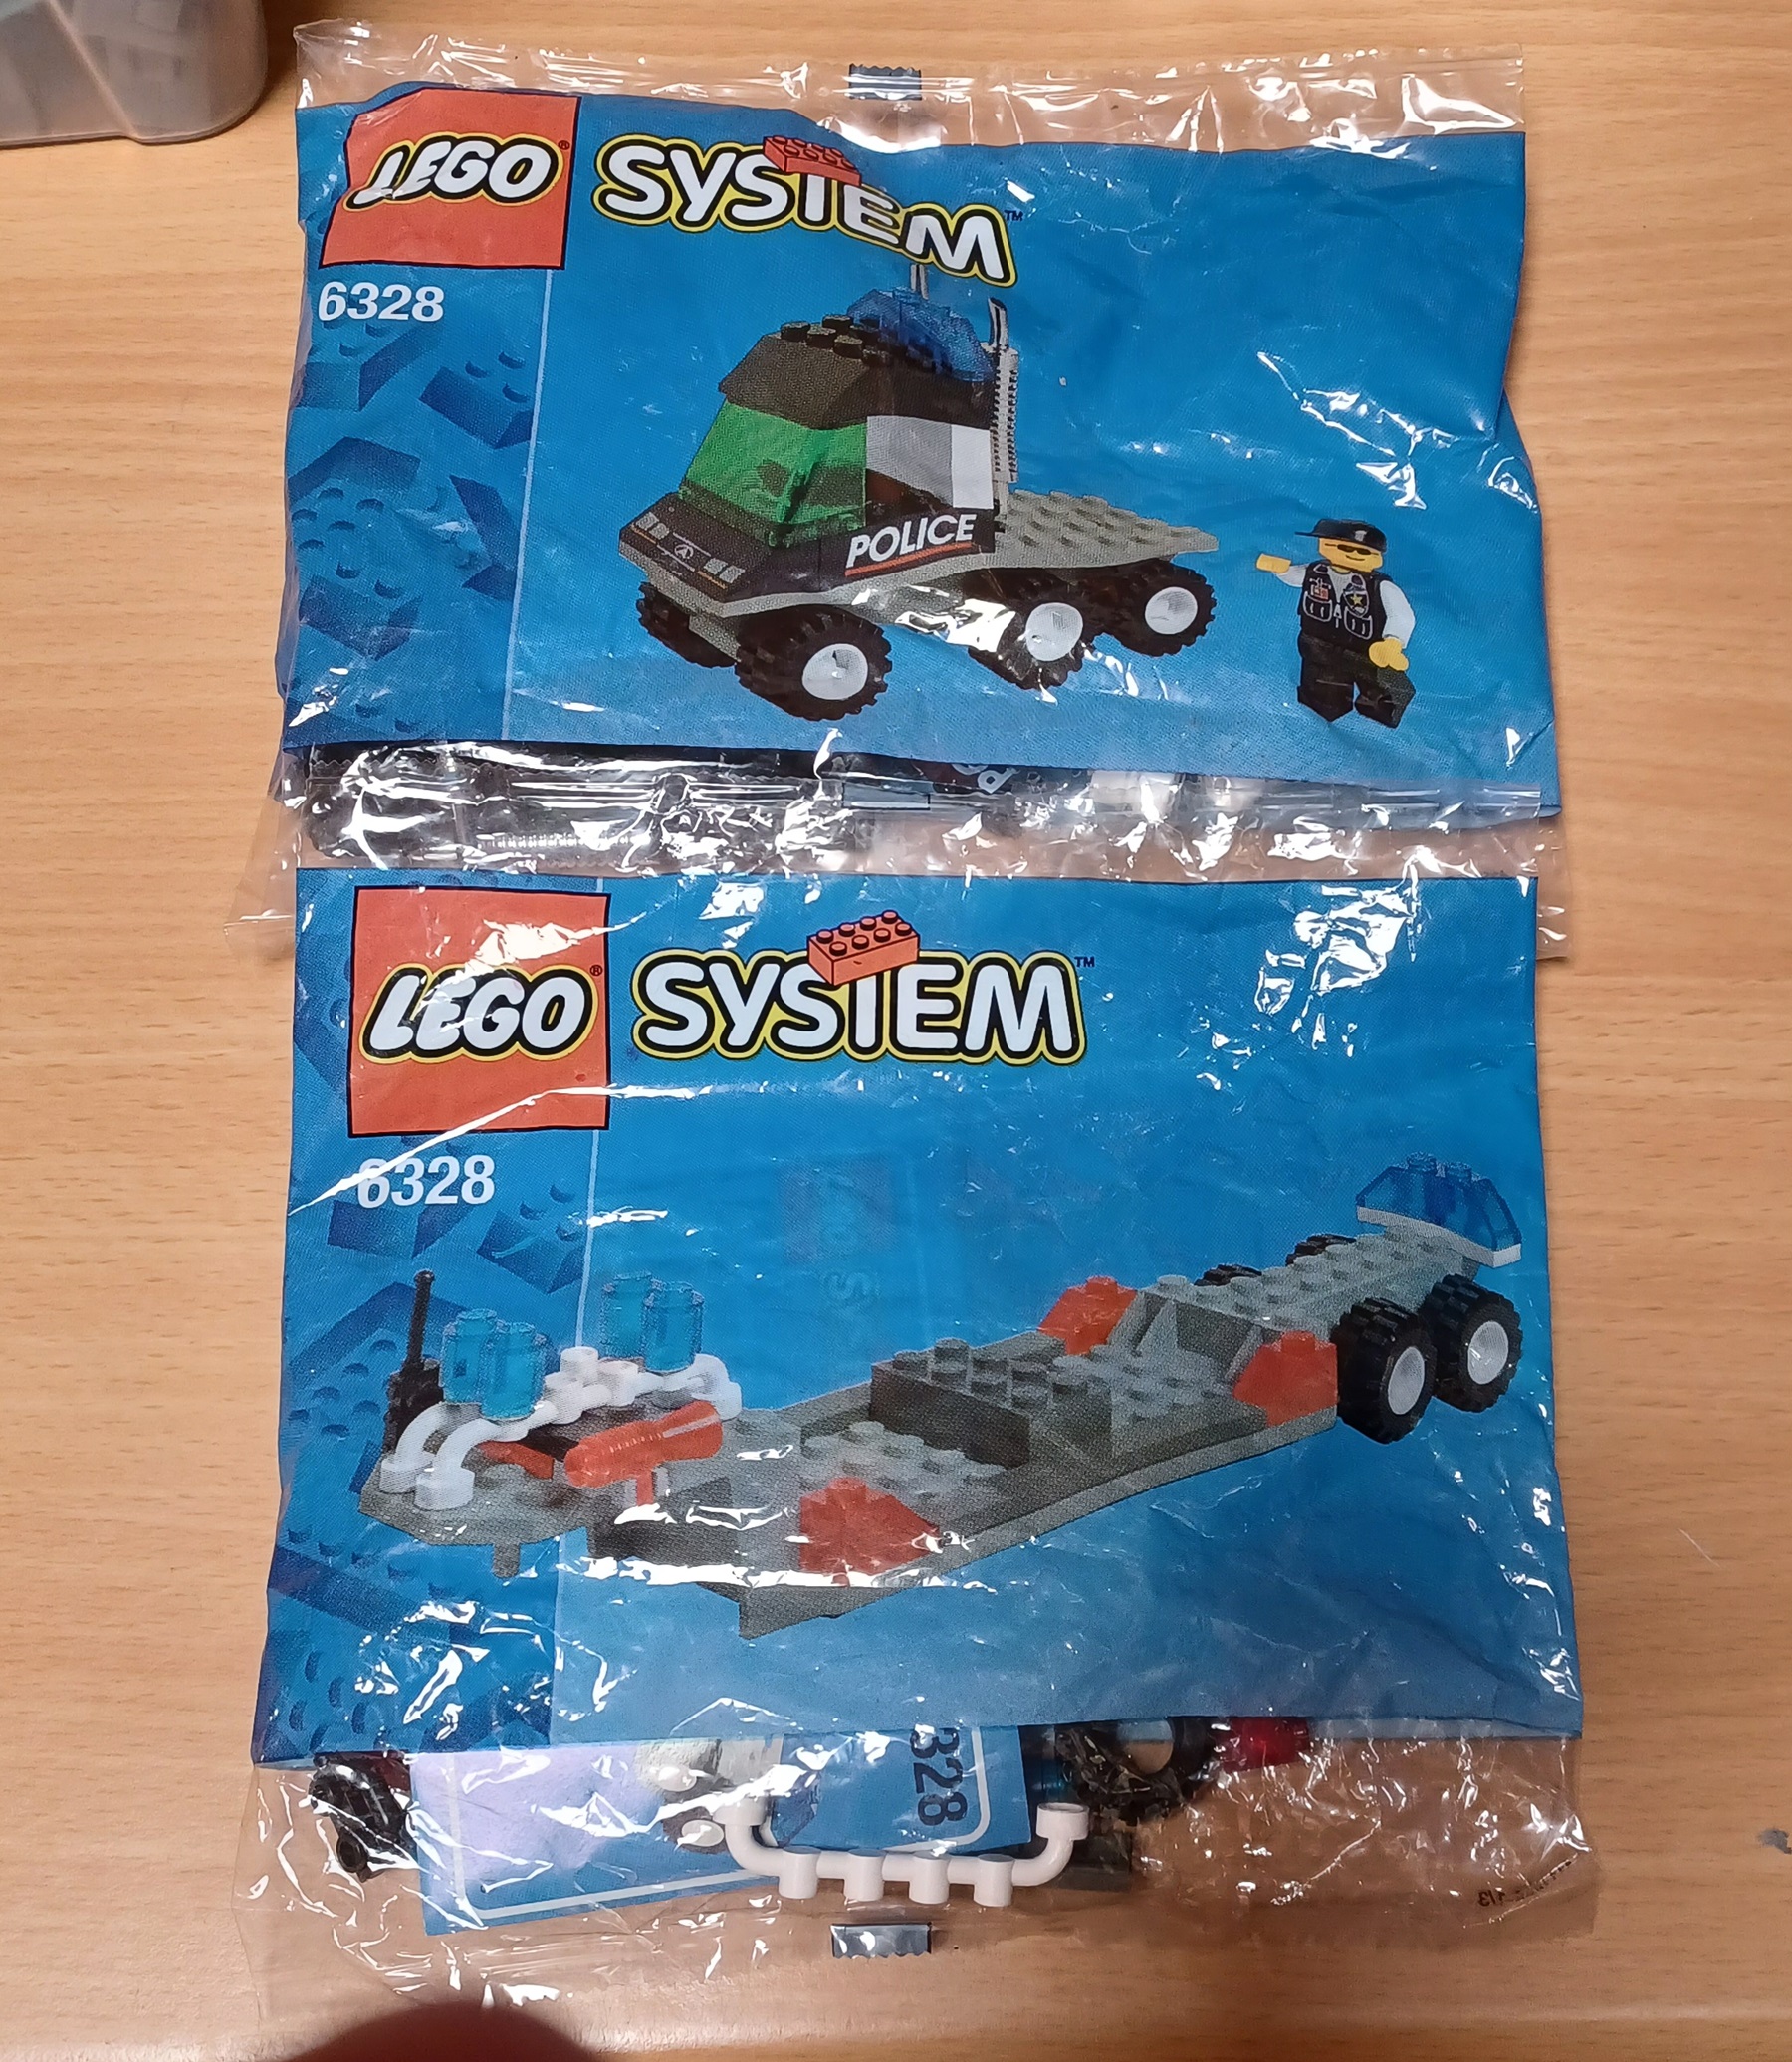 0010 Lego system 6328 - 1 - 2